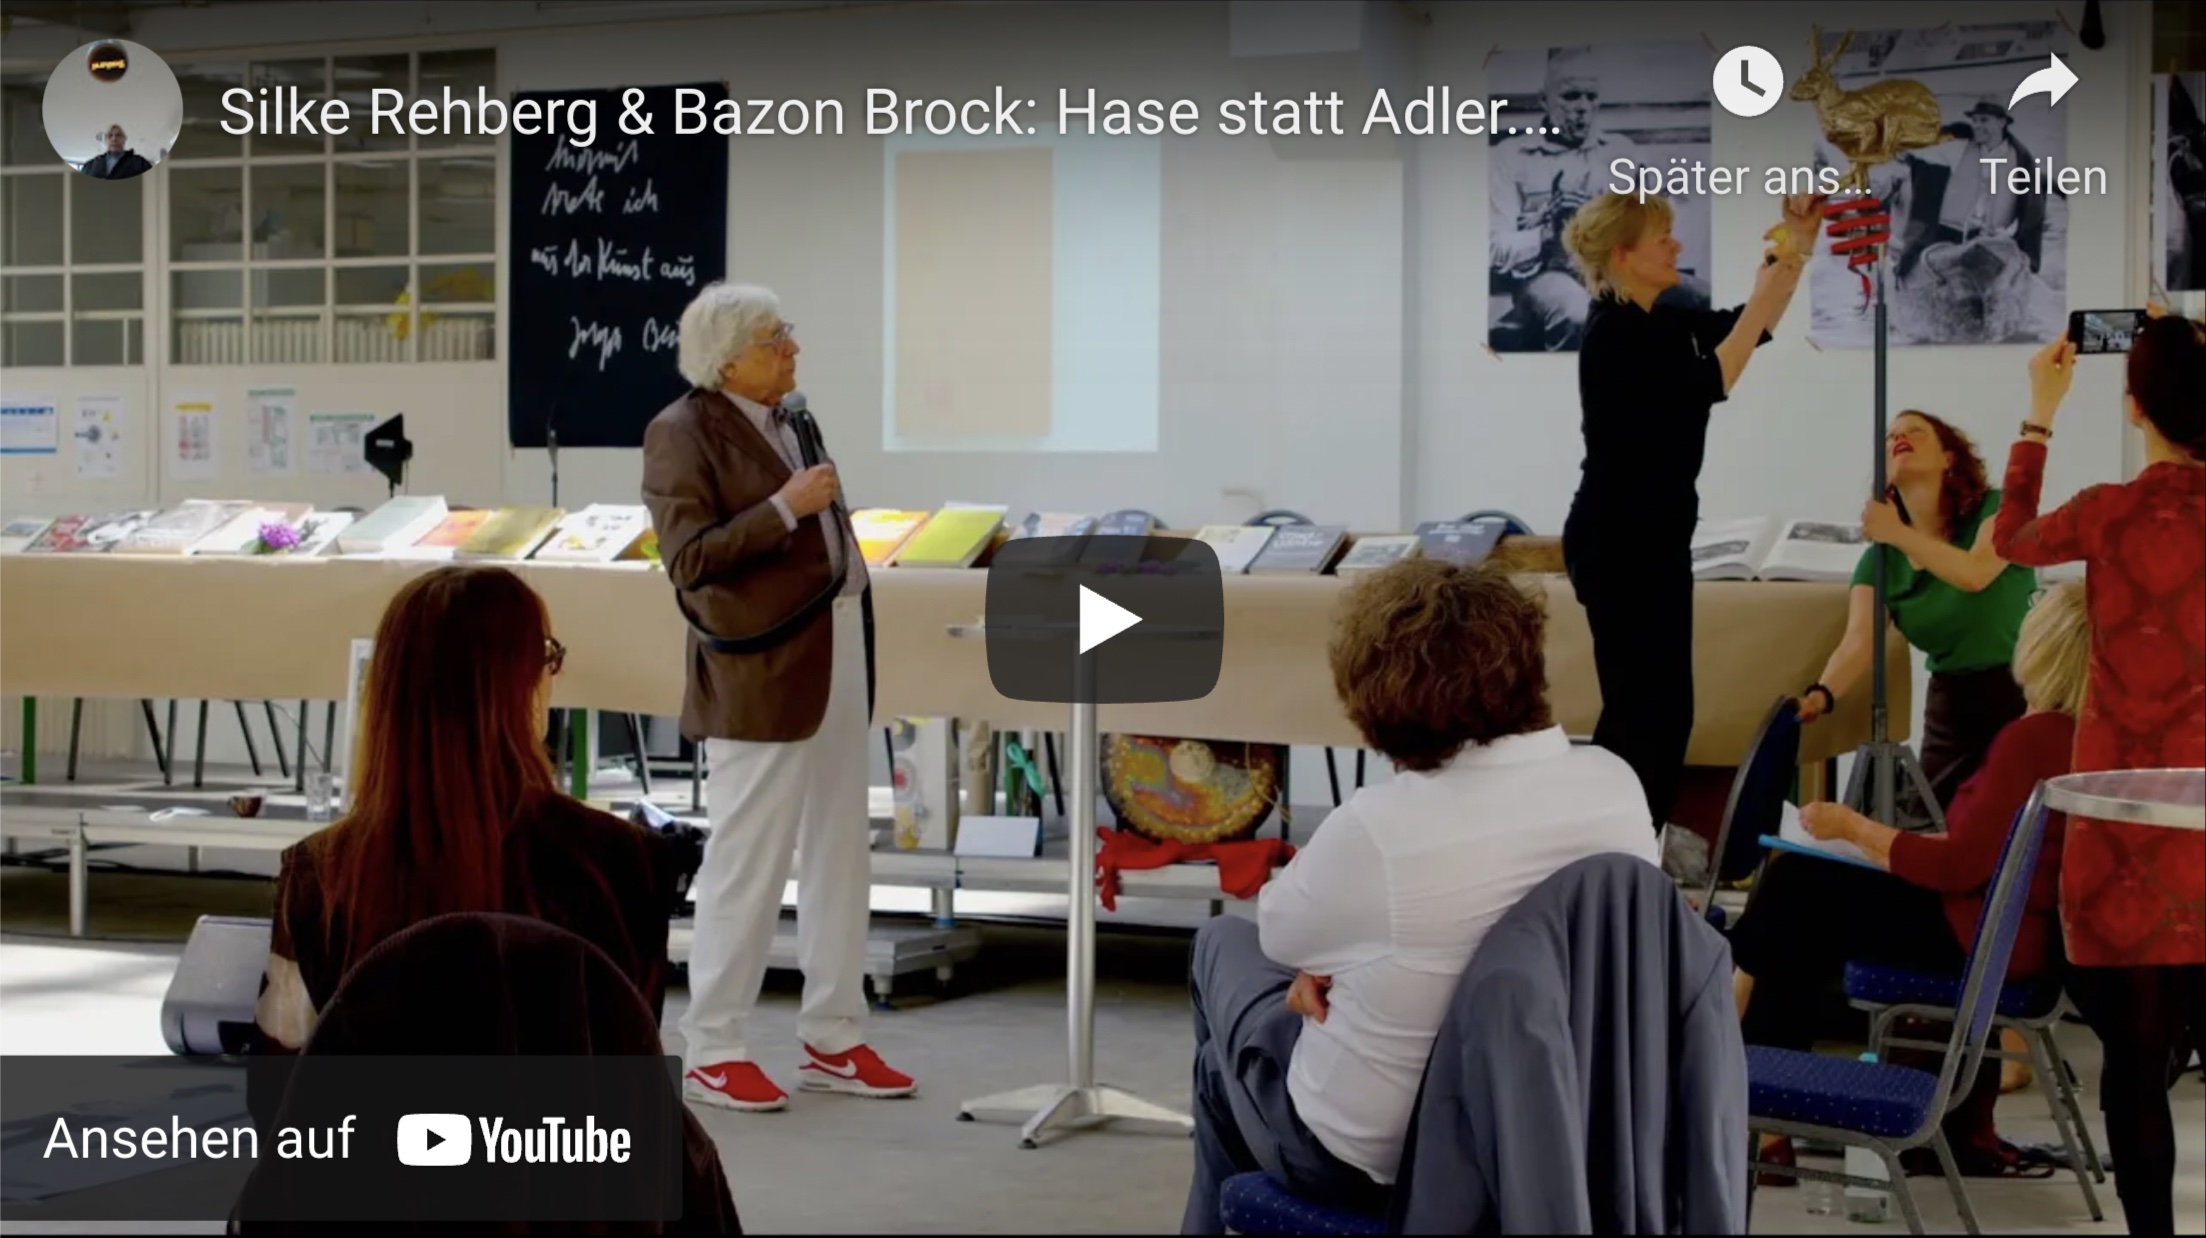 Silke Rehberg & Bazon Brock: Hase statt Adler. Ein Neuentwurf für das deutsche Staatswappen